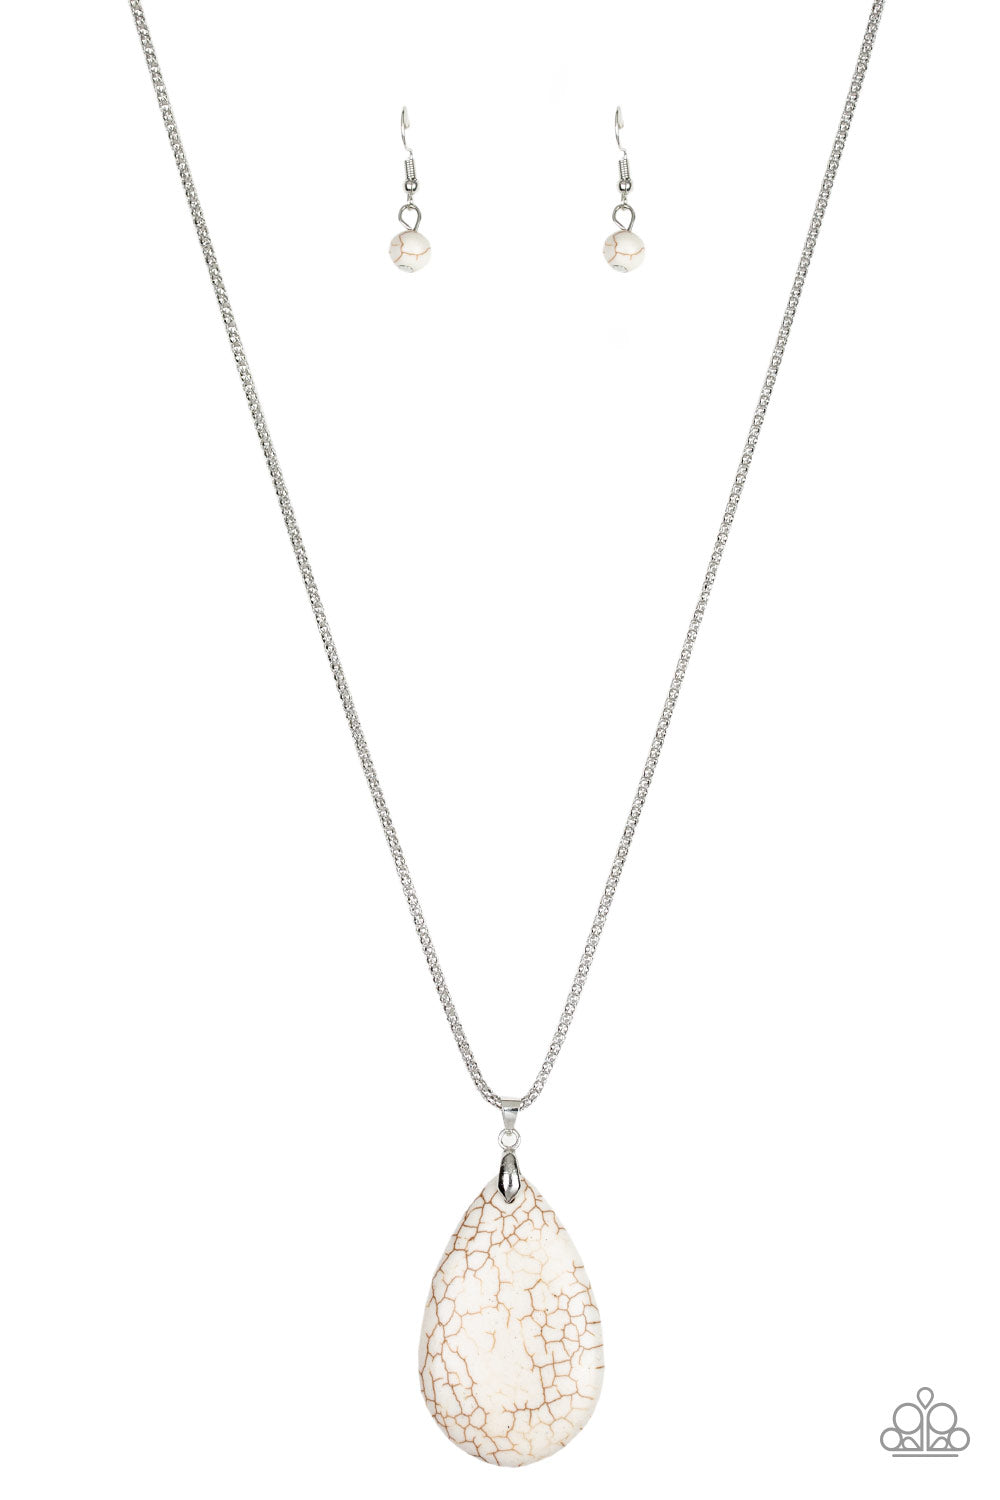 Sedona Sandstone - White Stone Necklace Set - Princess Glam Shop